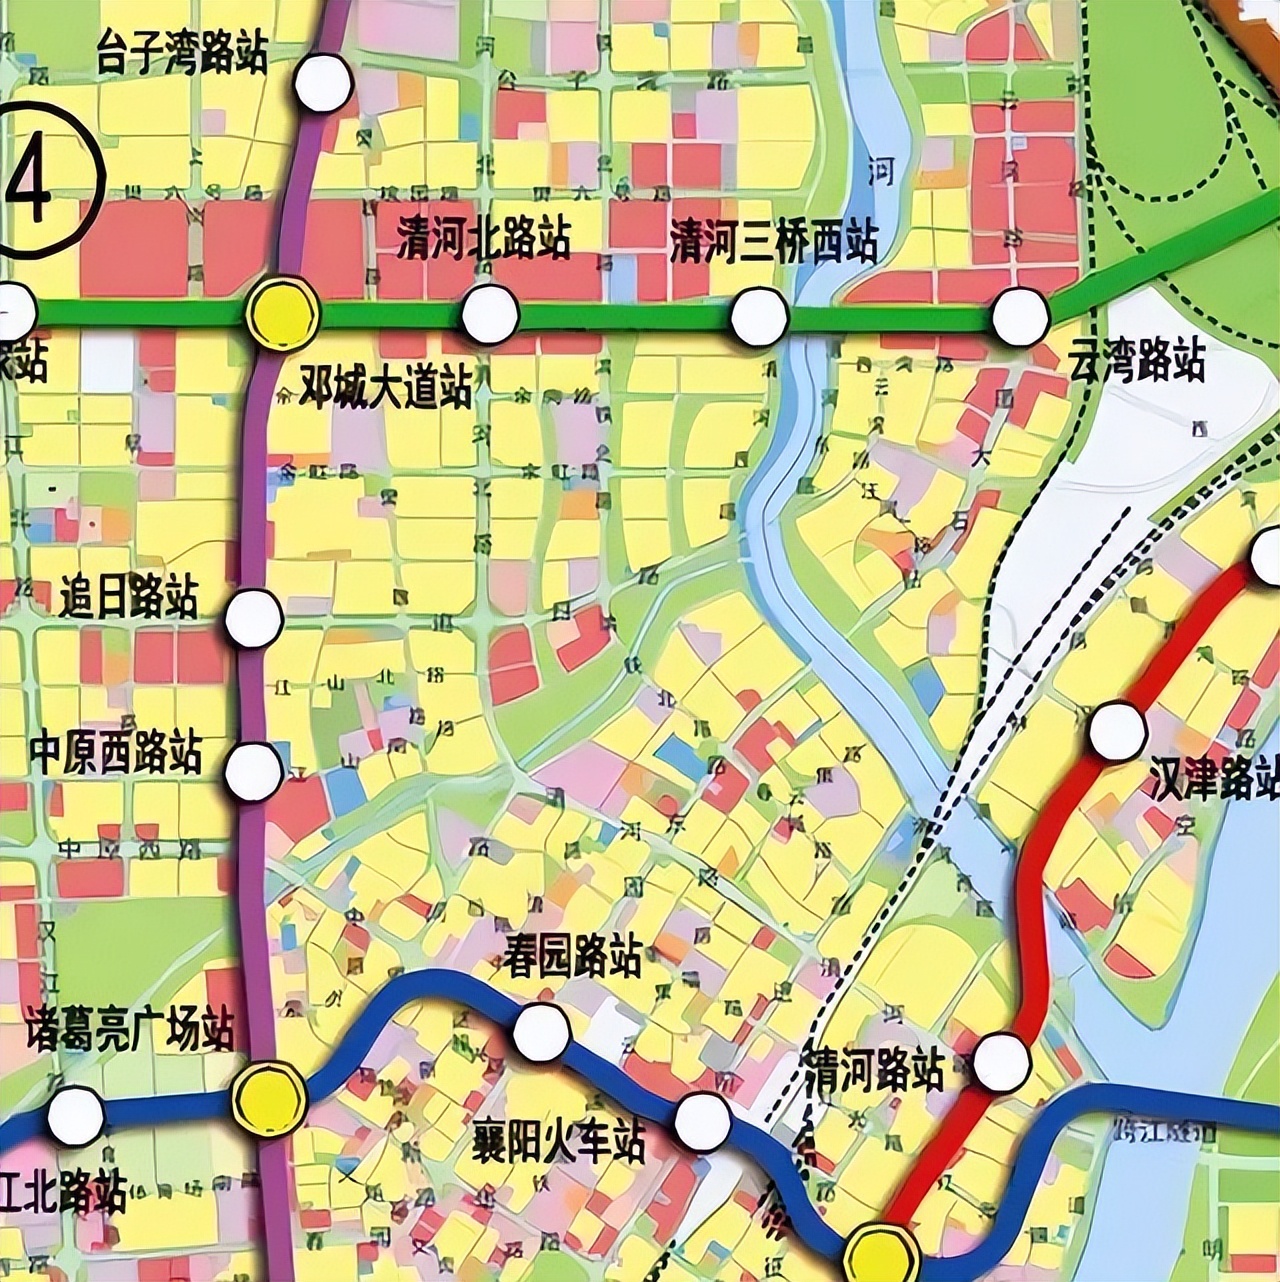 区)编制的《襄阳市2020年重大项目谋划清单》,其中确切地提到轻轨地铁